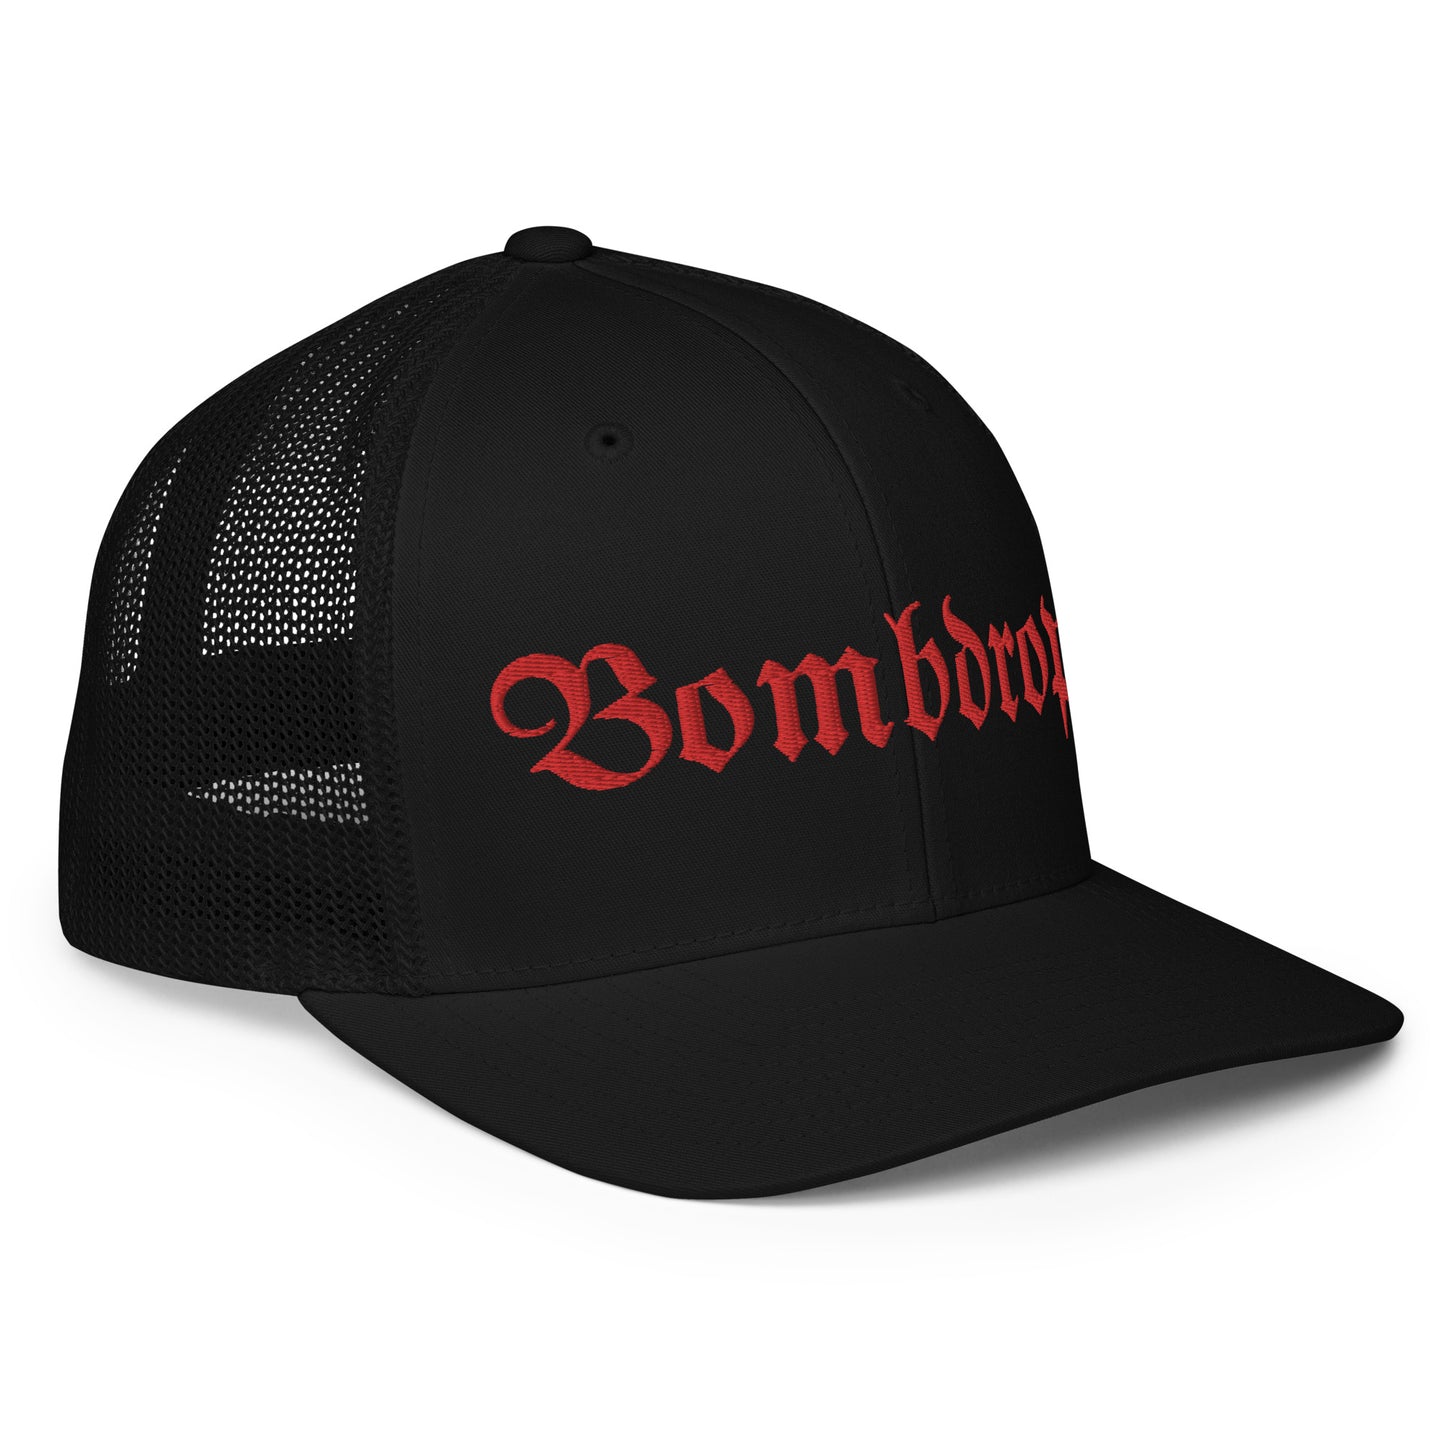 Closed-back Bombdrop OS trucker cap